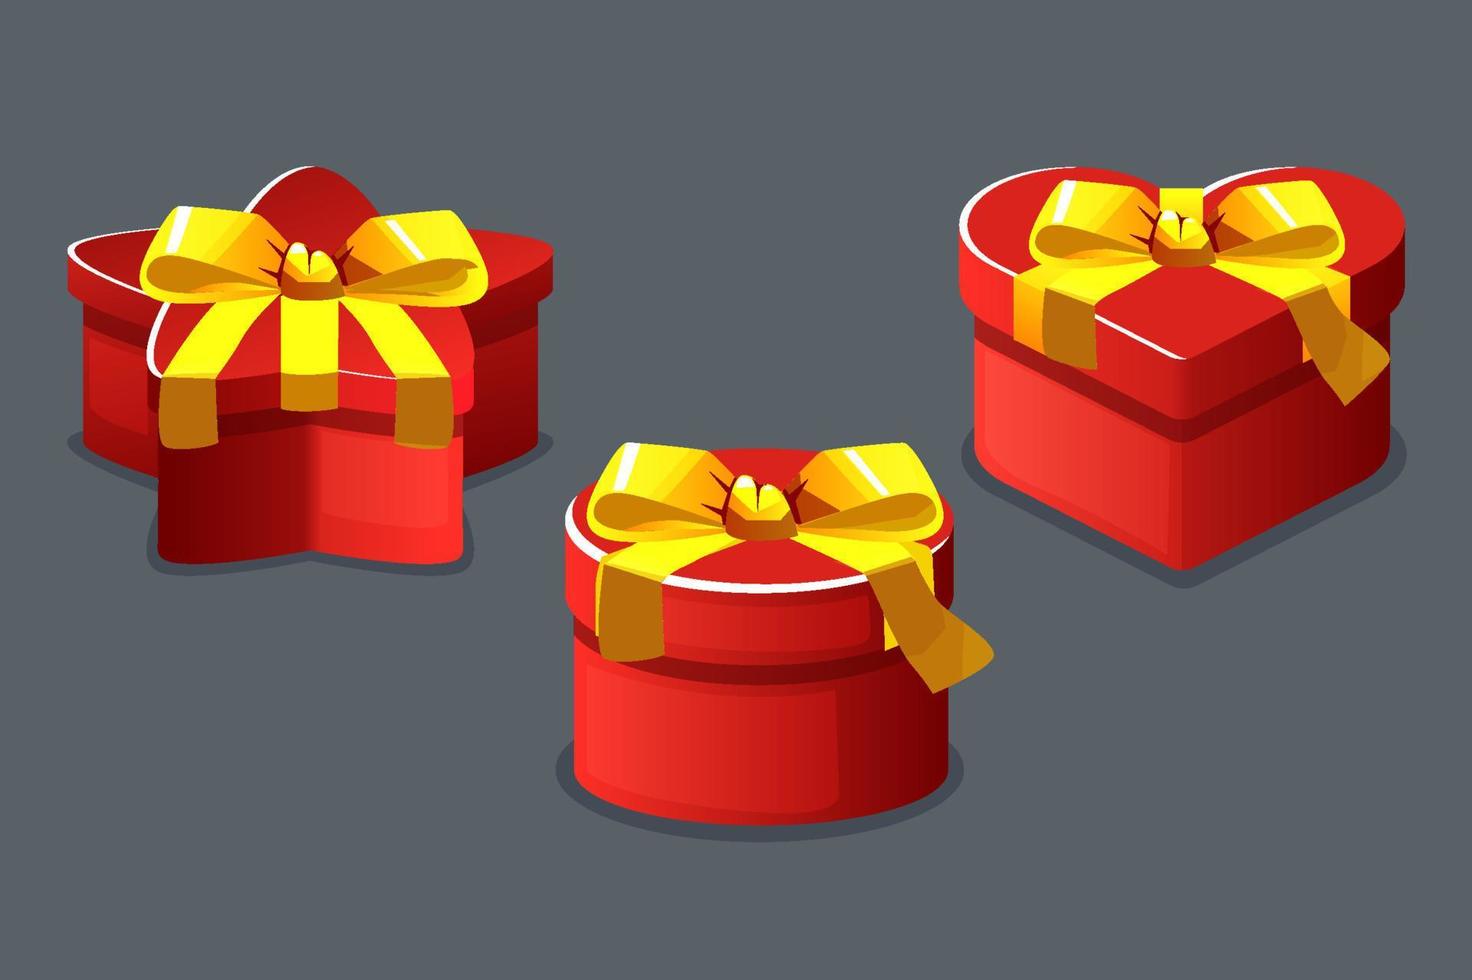 rosso scatole i regali chiuso diverso forme isolato per il gioco. vettore illustrazione impostato i regali con cuore, stella e cerchio forme con arco.